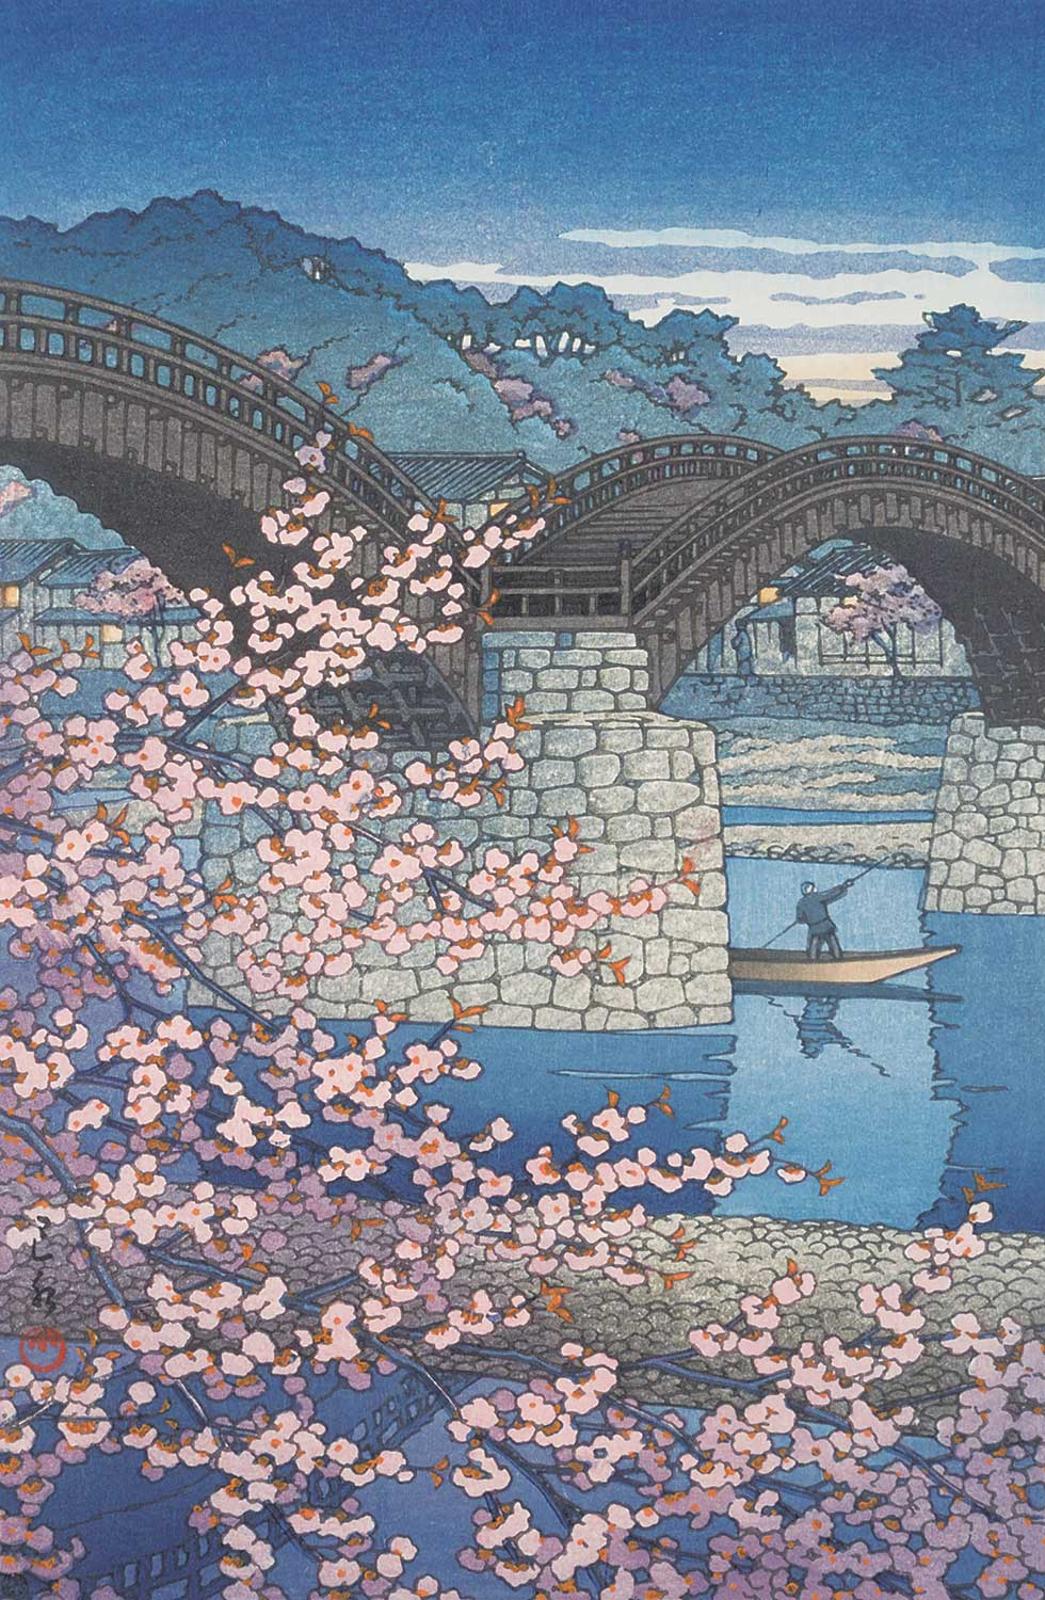 Hasui Kawase (1883-1957) - Kintai Bridge in Spring